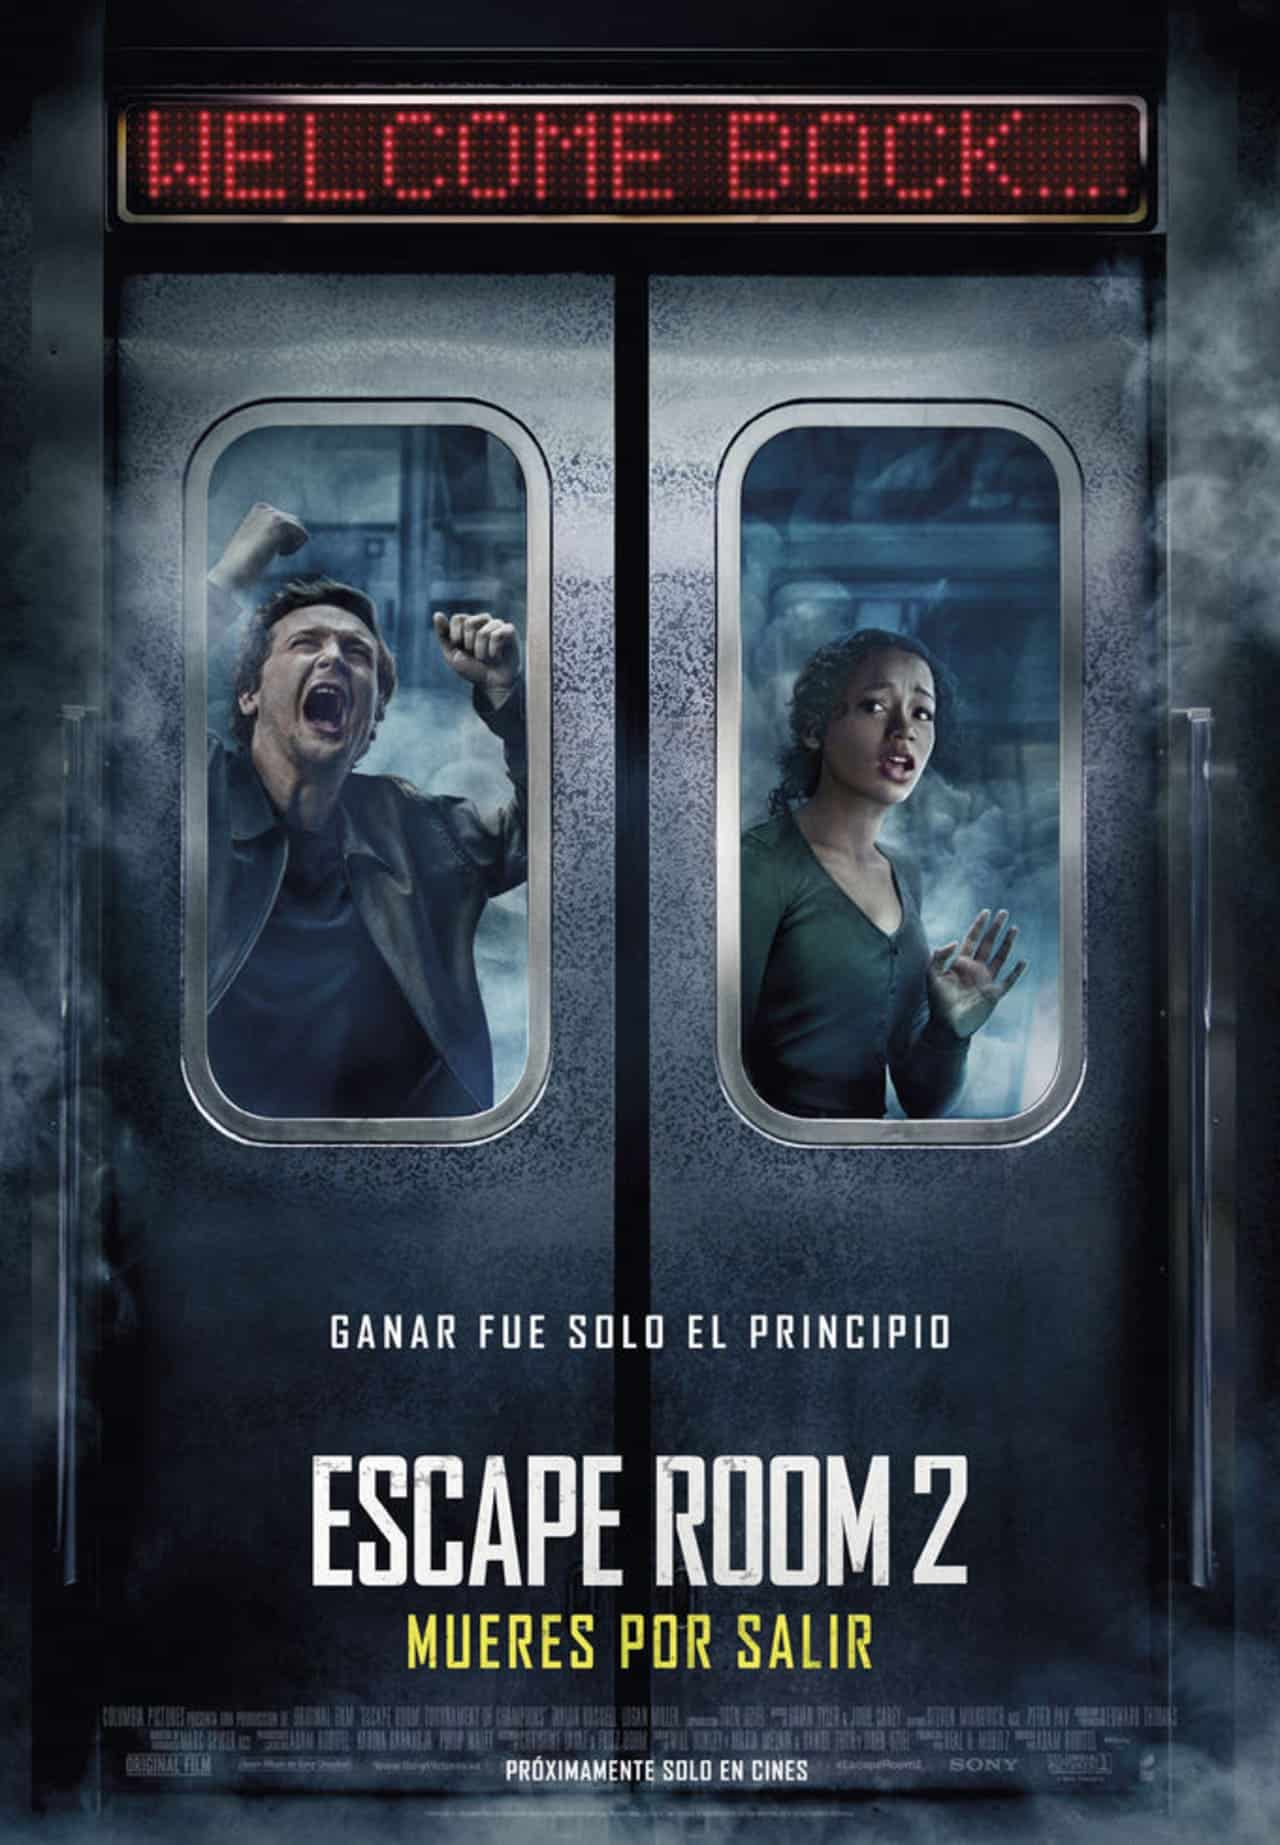 Cartel de la película Escape Room 2 Mueres por salir